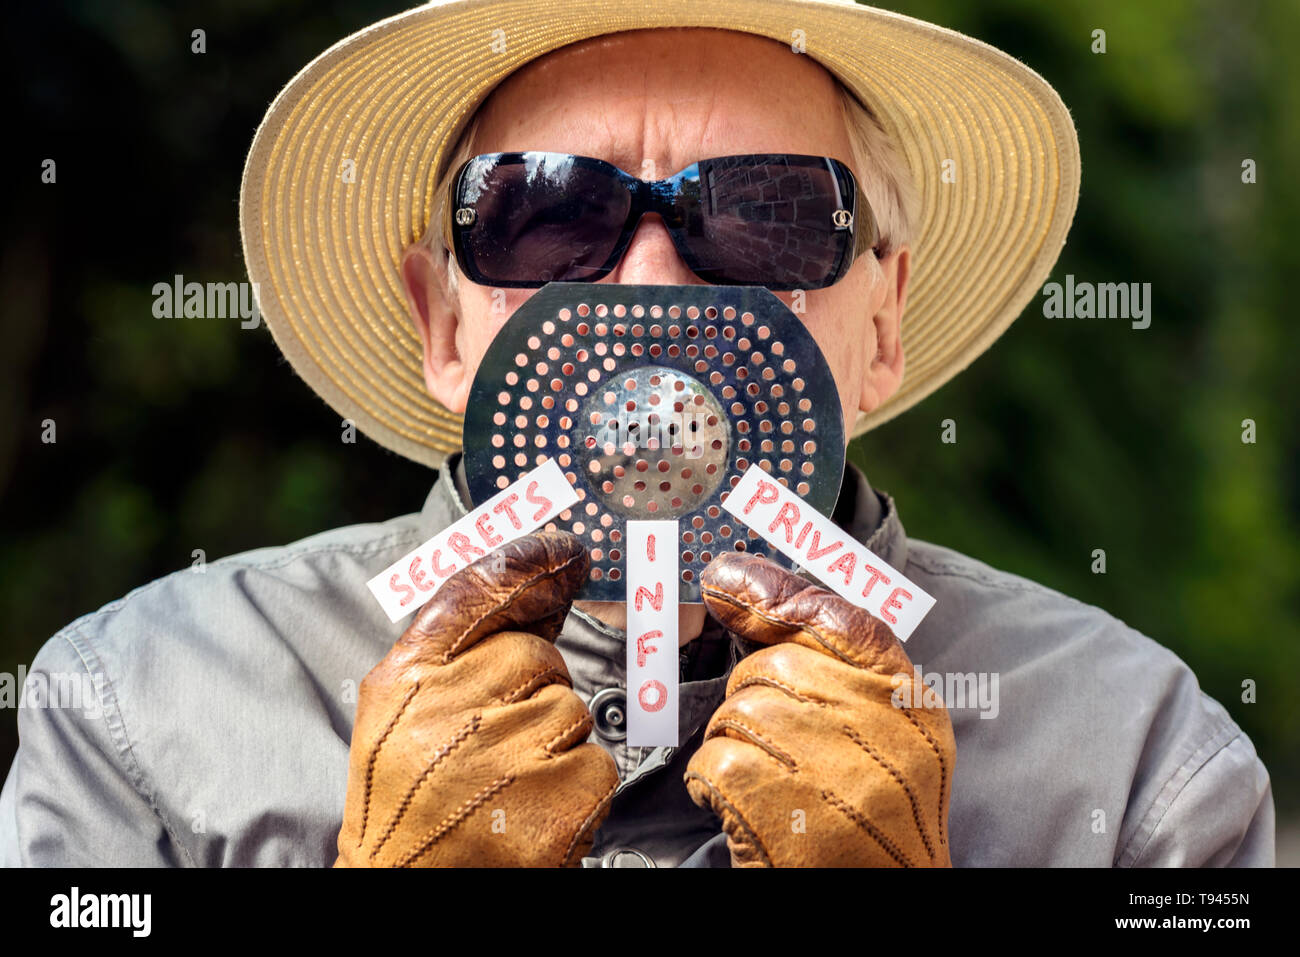 Parodie notion de secret agent, spy, avec l'homme au Panama chapeau,  lunettes et gants holding grille à bouche avec tags disant, secrets, info  et privé Photo Stock - Alamy